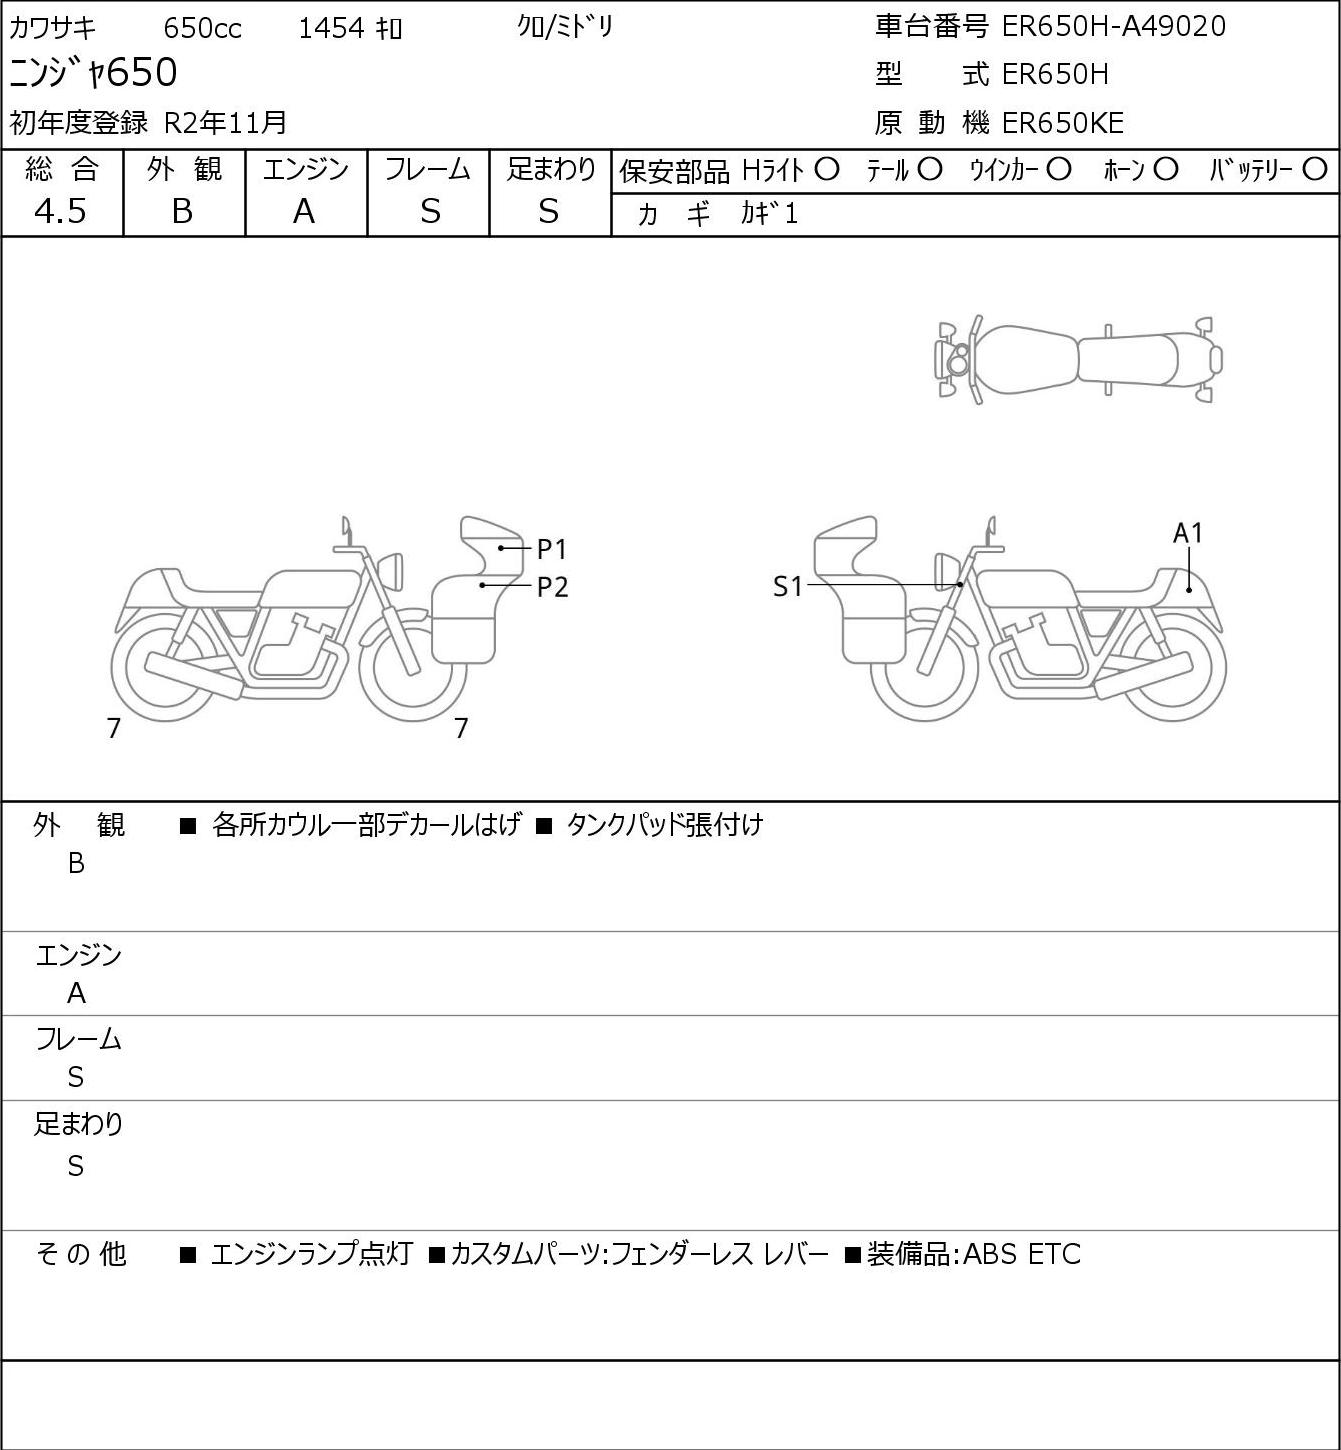 Kawasaki NINJA 650 ER650H 2020г. 1454